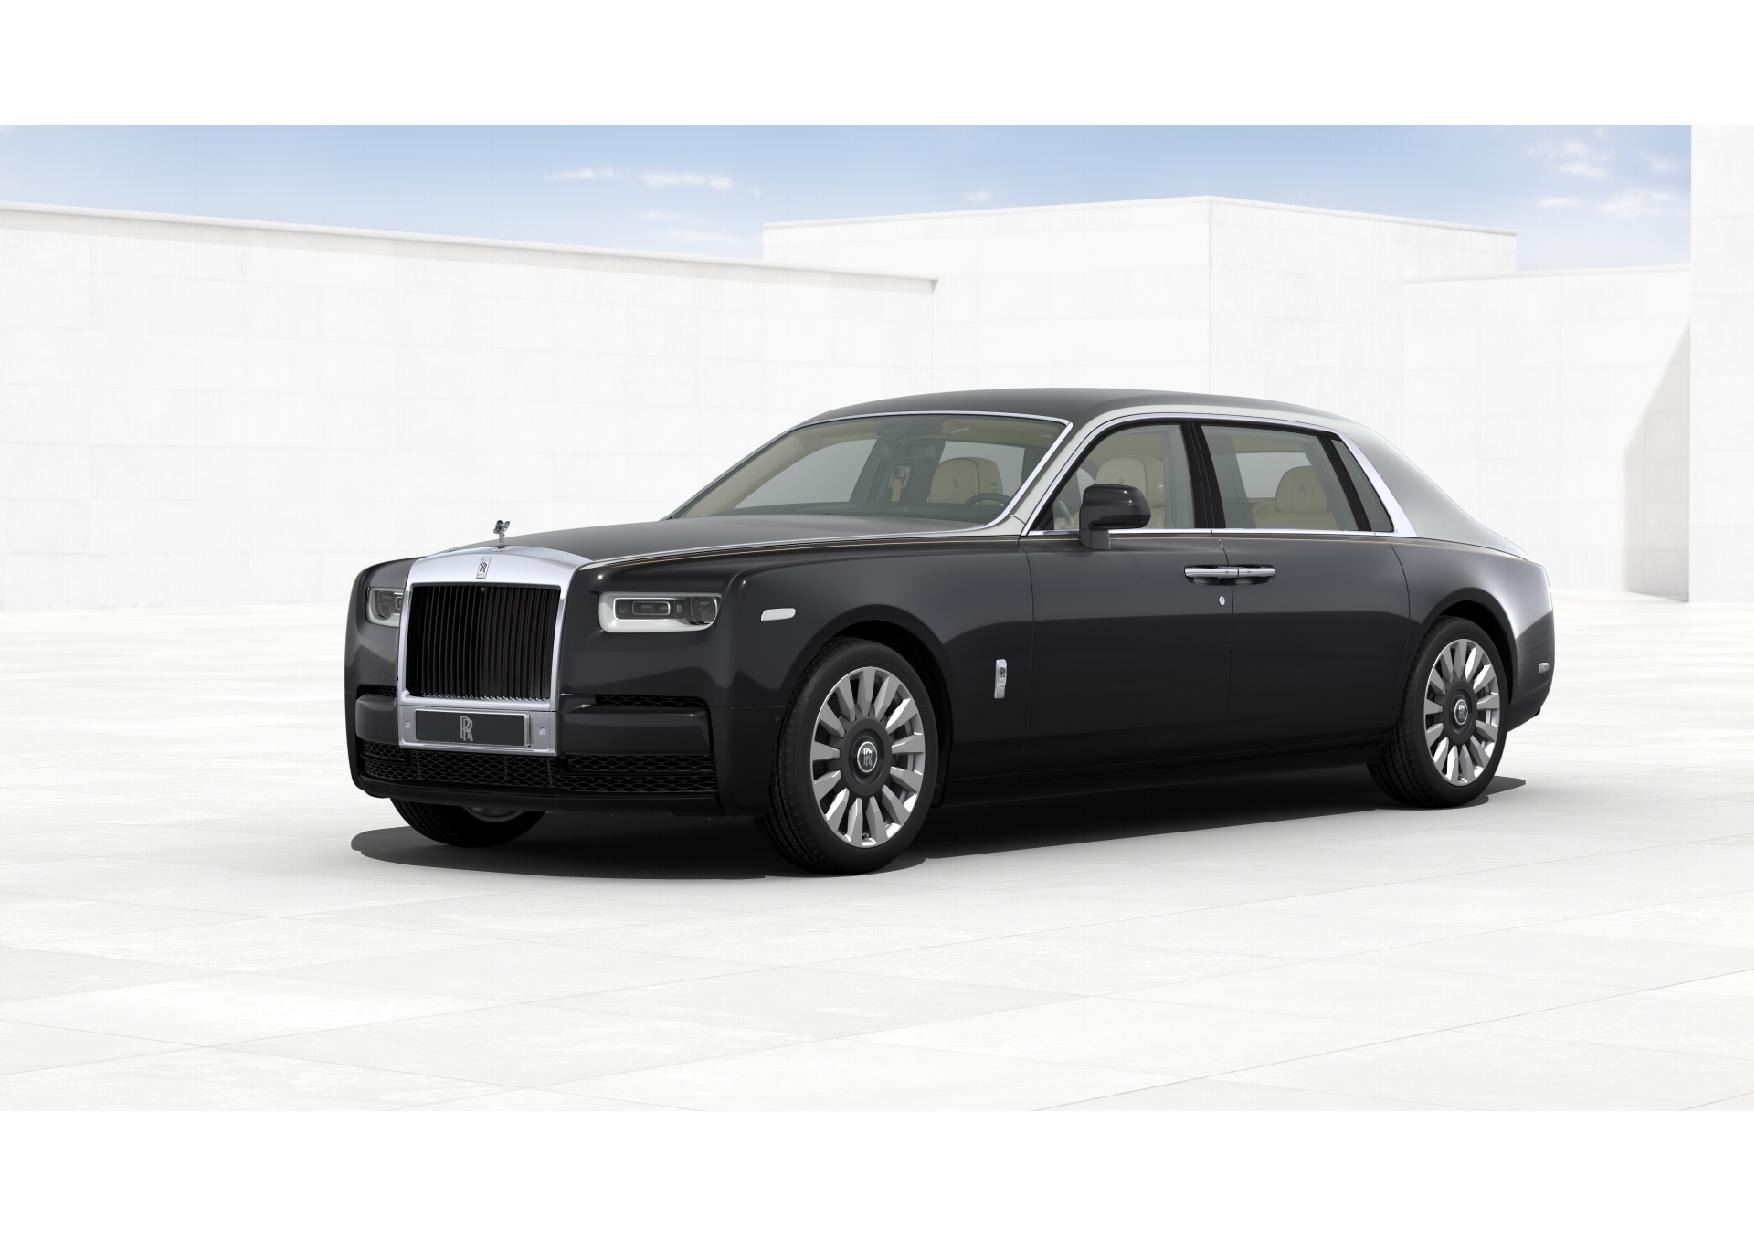 New 2022 Rolls-Royce Phantom EWB For Sale | Ferrari of Greenwich Stock  #H0-1042583